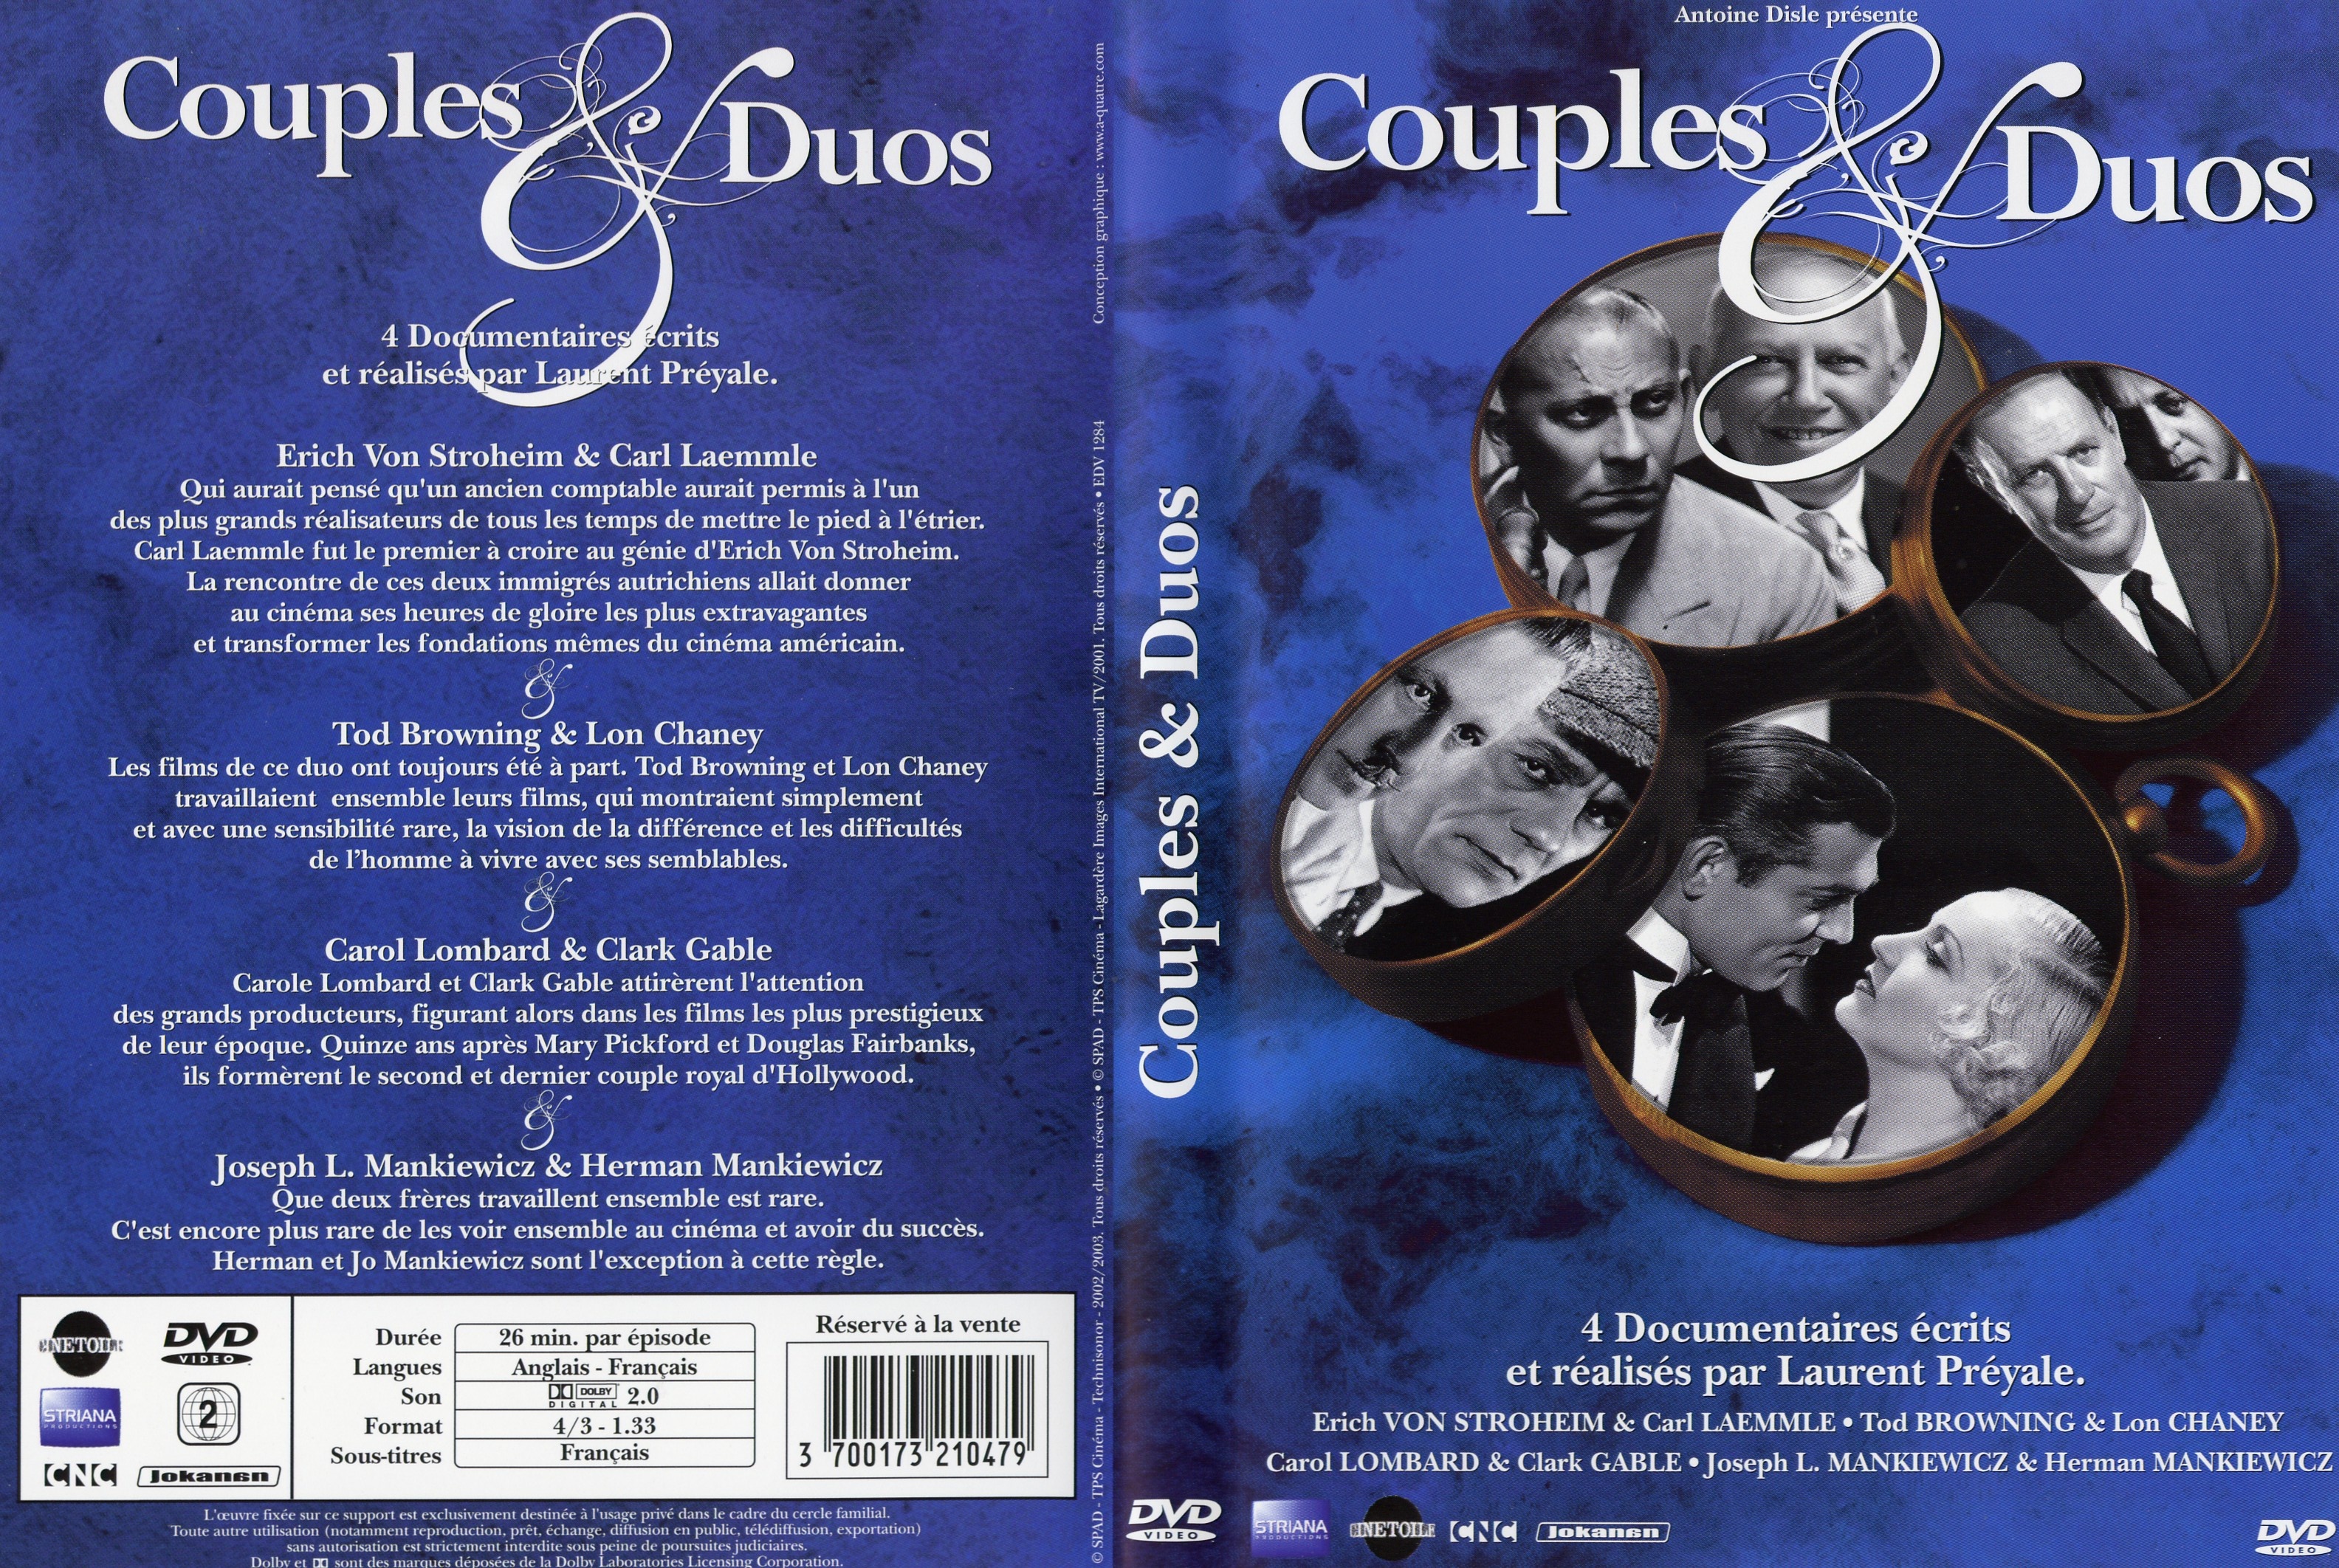 Jaquette DVD Couples et duos DVD 05